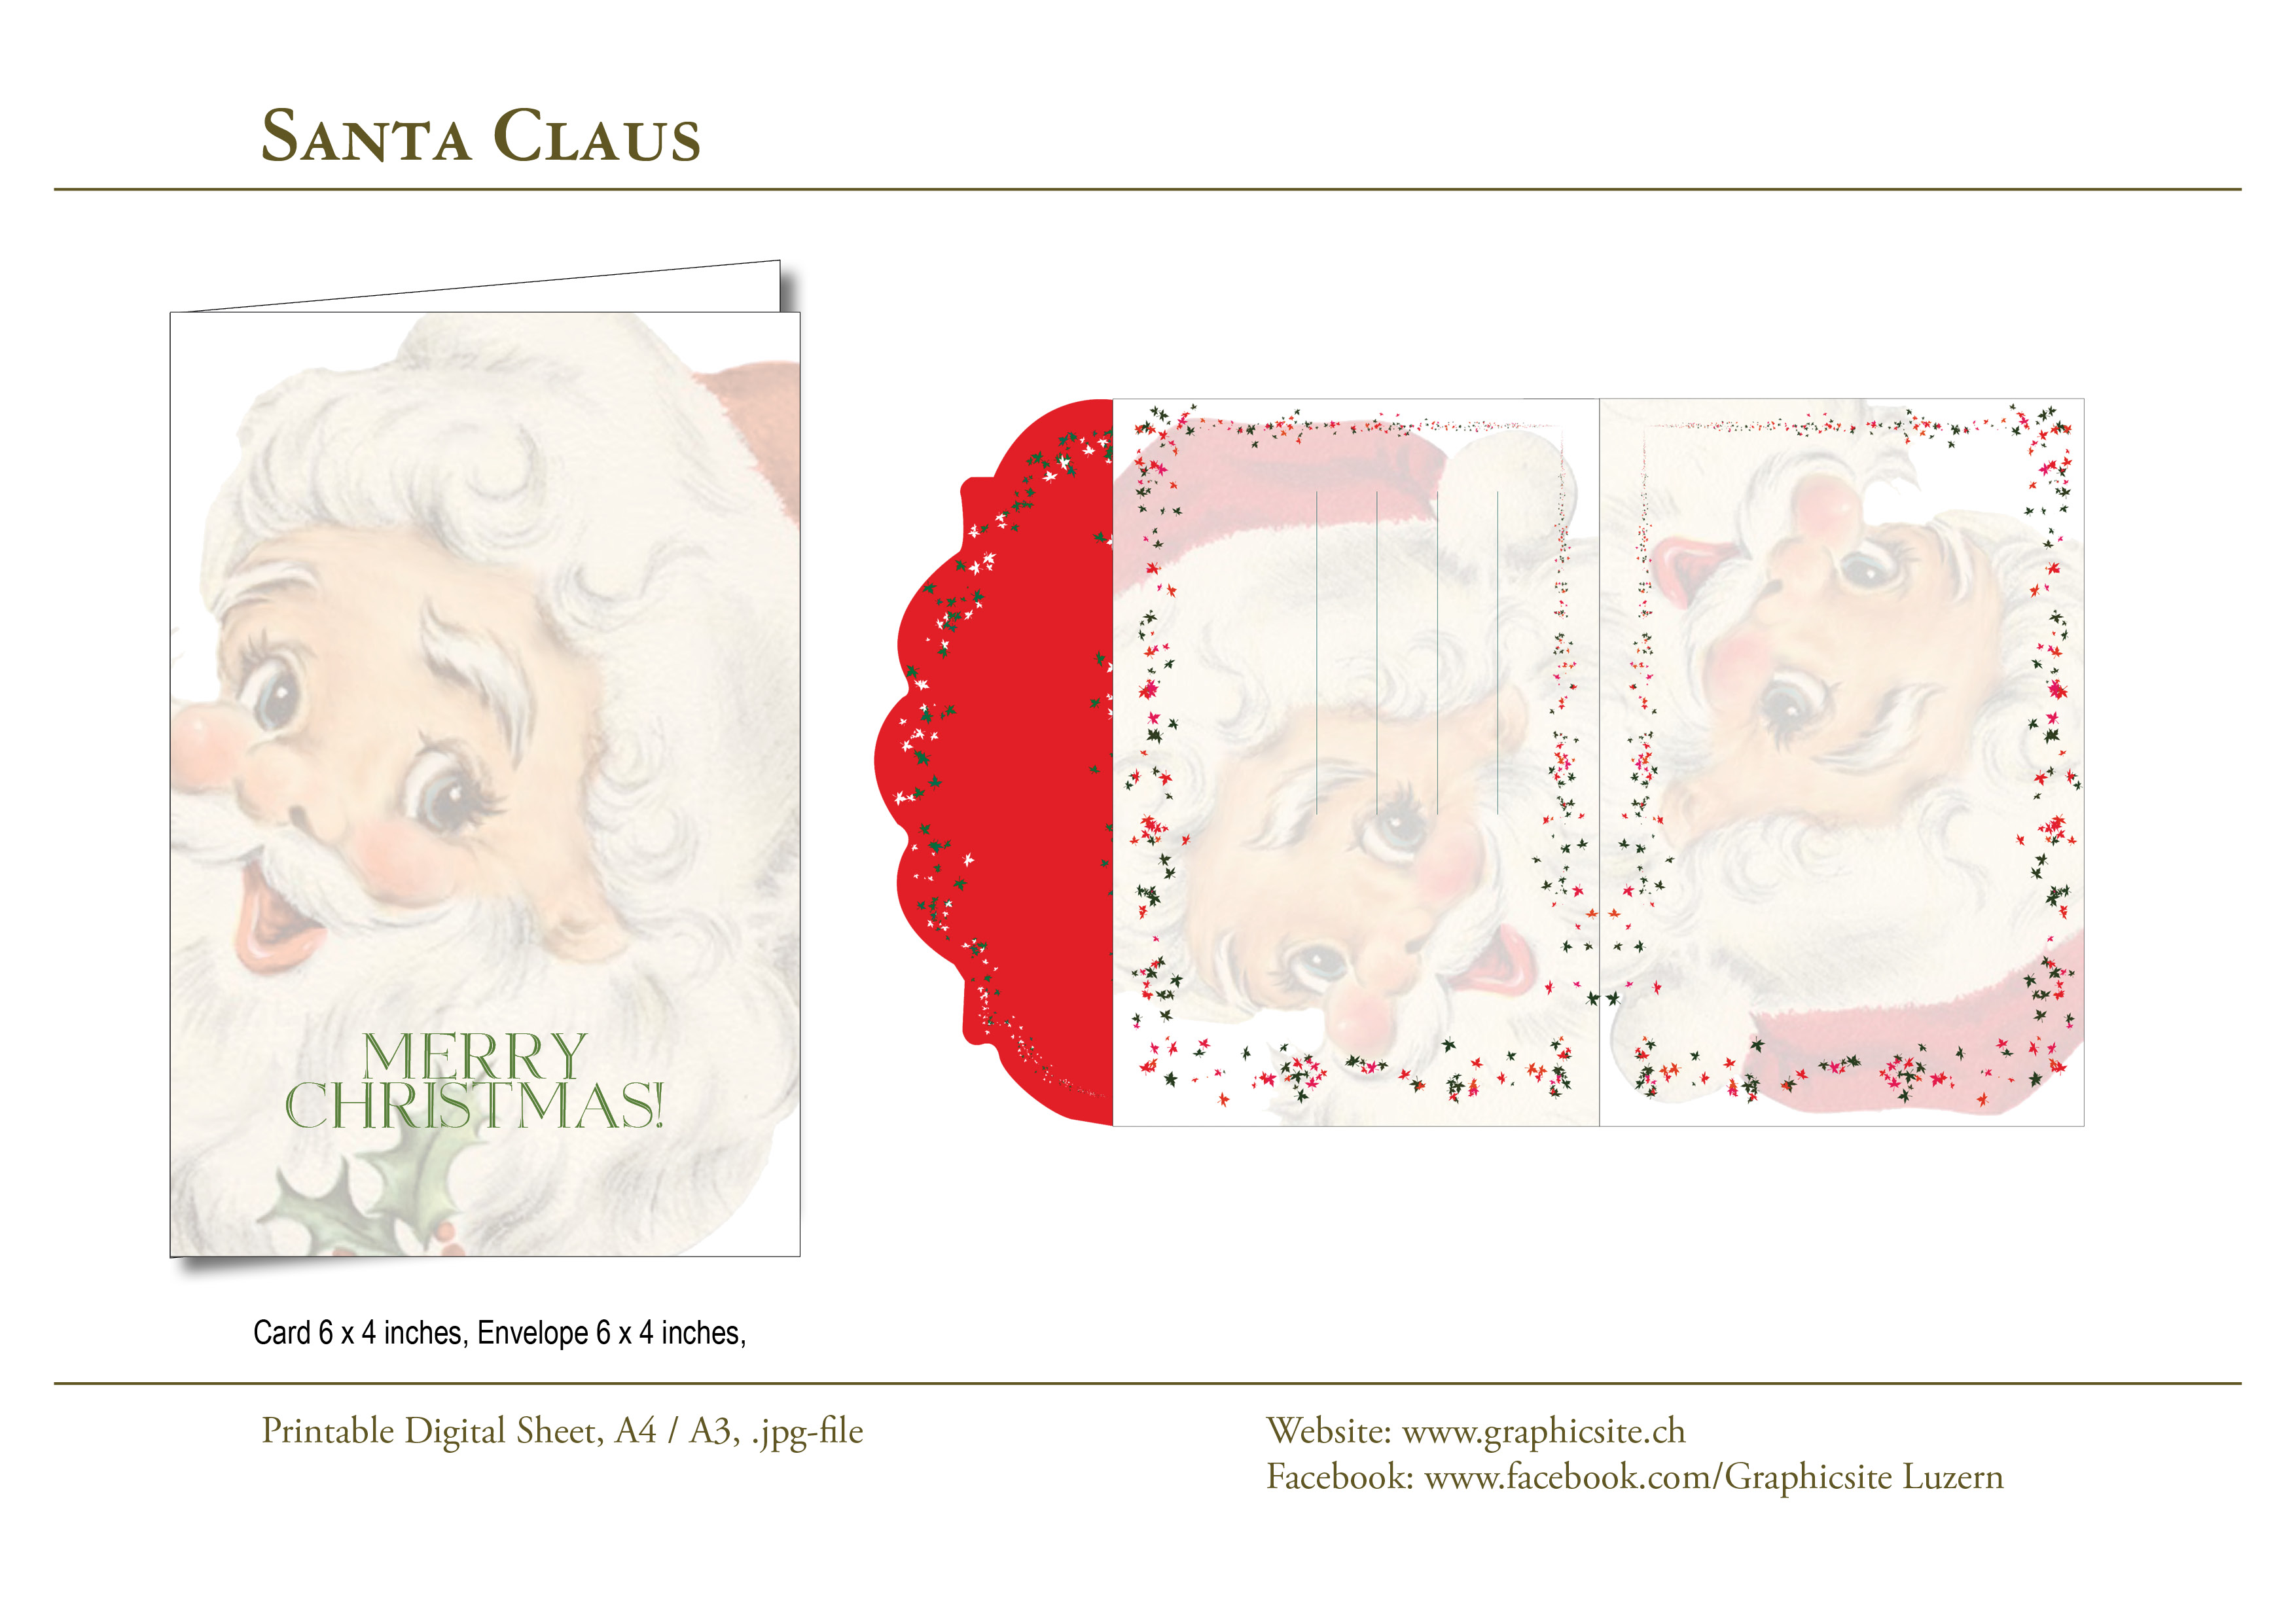 Karten selber drucken - Weihnachtskarten, Grusskarten, Weihnachtsmann Karten / Kuvert - #weihnachtskarten, #karten, #selber, #drucken, #gestalten, #etiketten, #basteln, #luzern, #schweiz